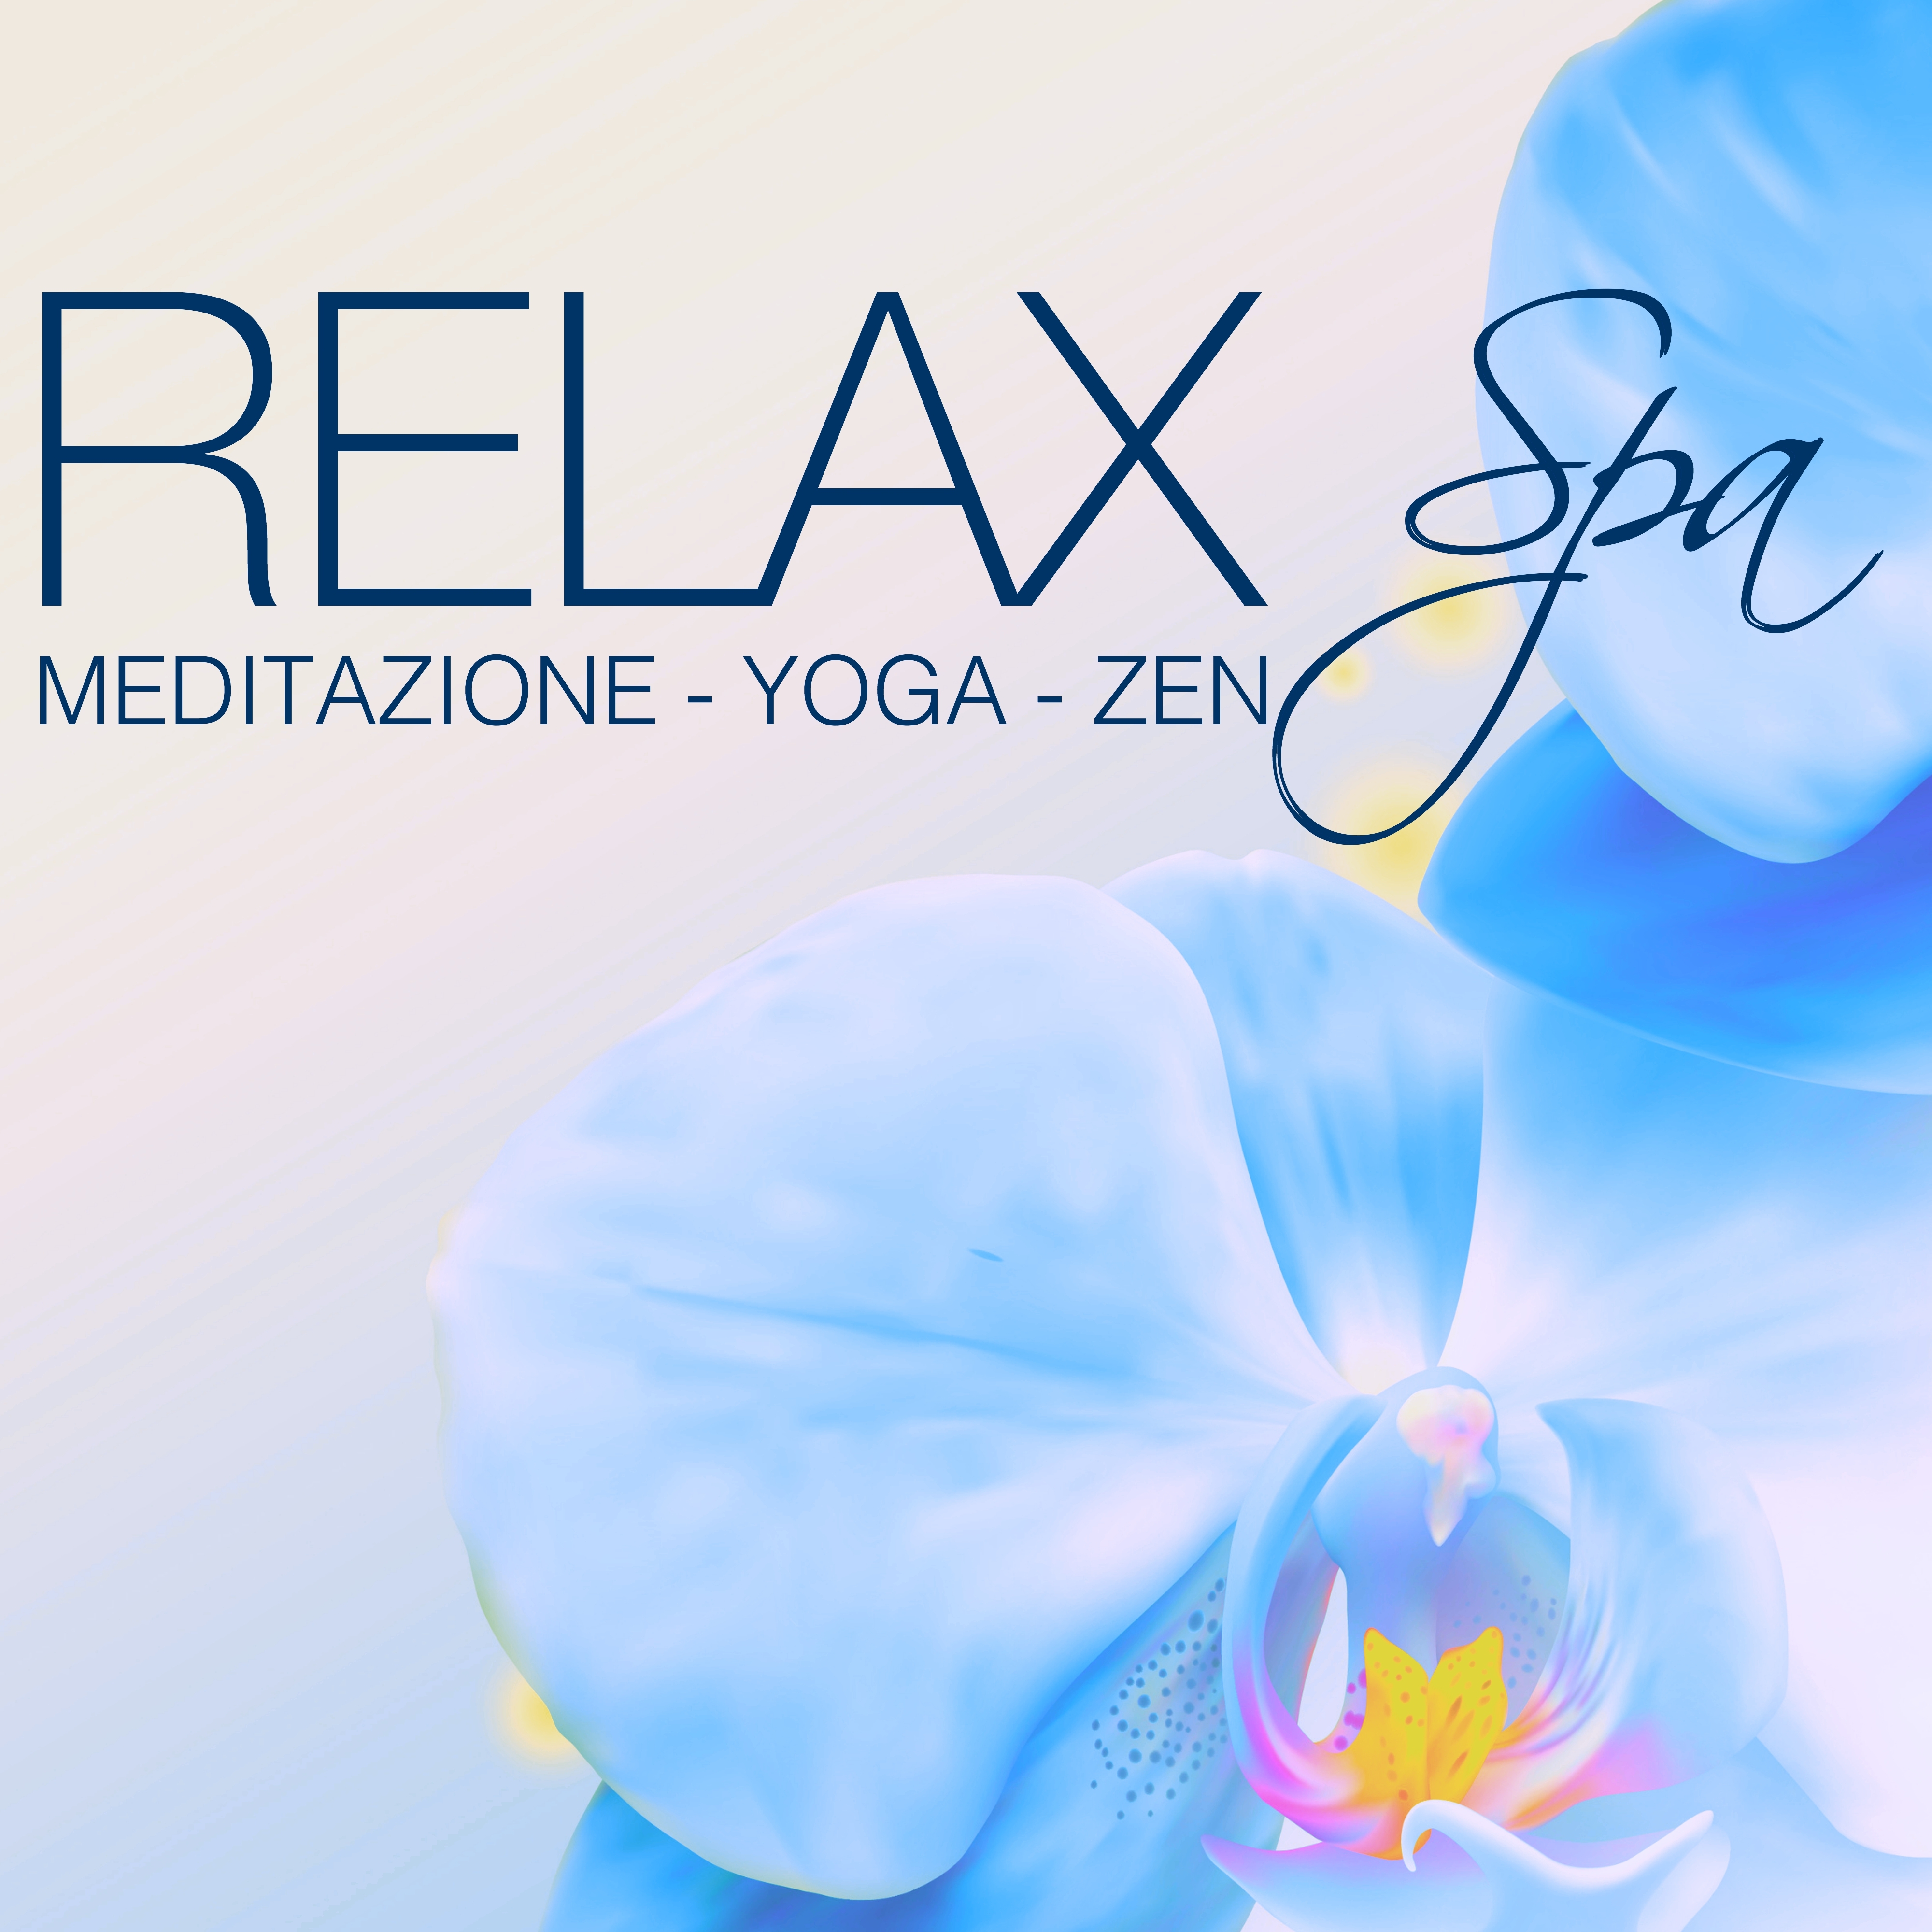 Relax Spa - Musica Rilassante per Meditazione Zen, Relax, Yoga, Sonno Profondo, Massaggio, Spa & Anti-Stress